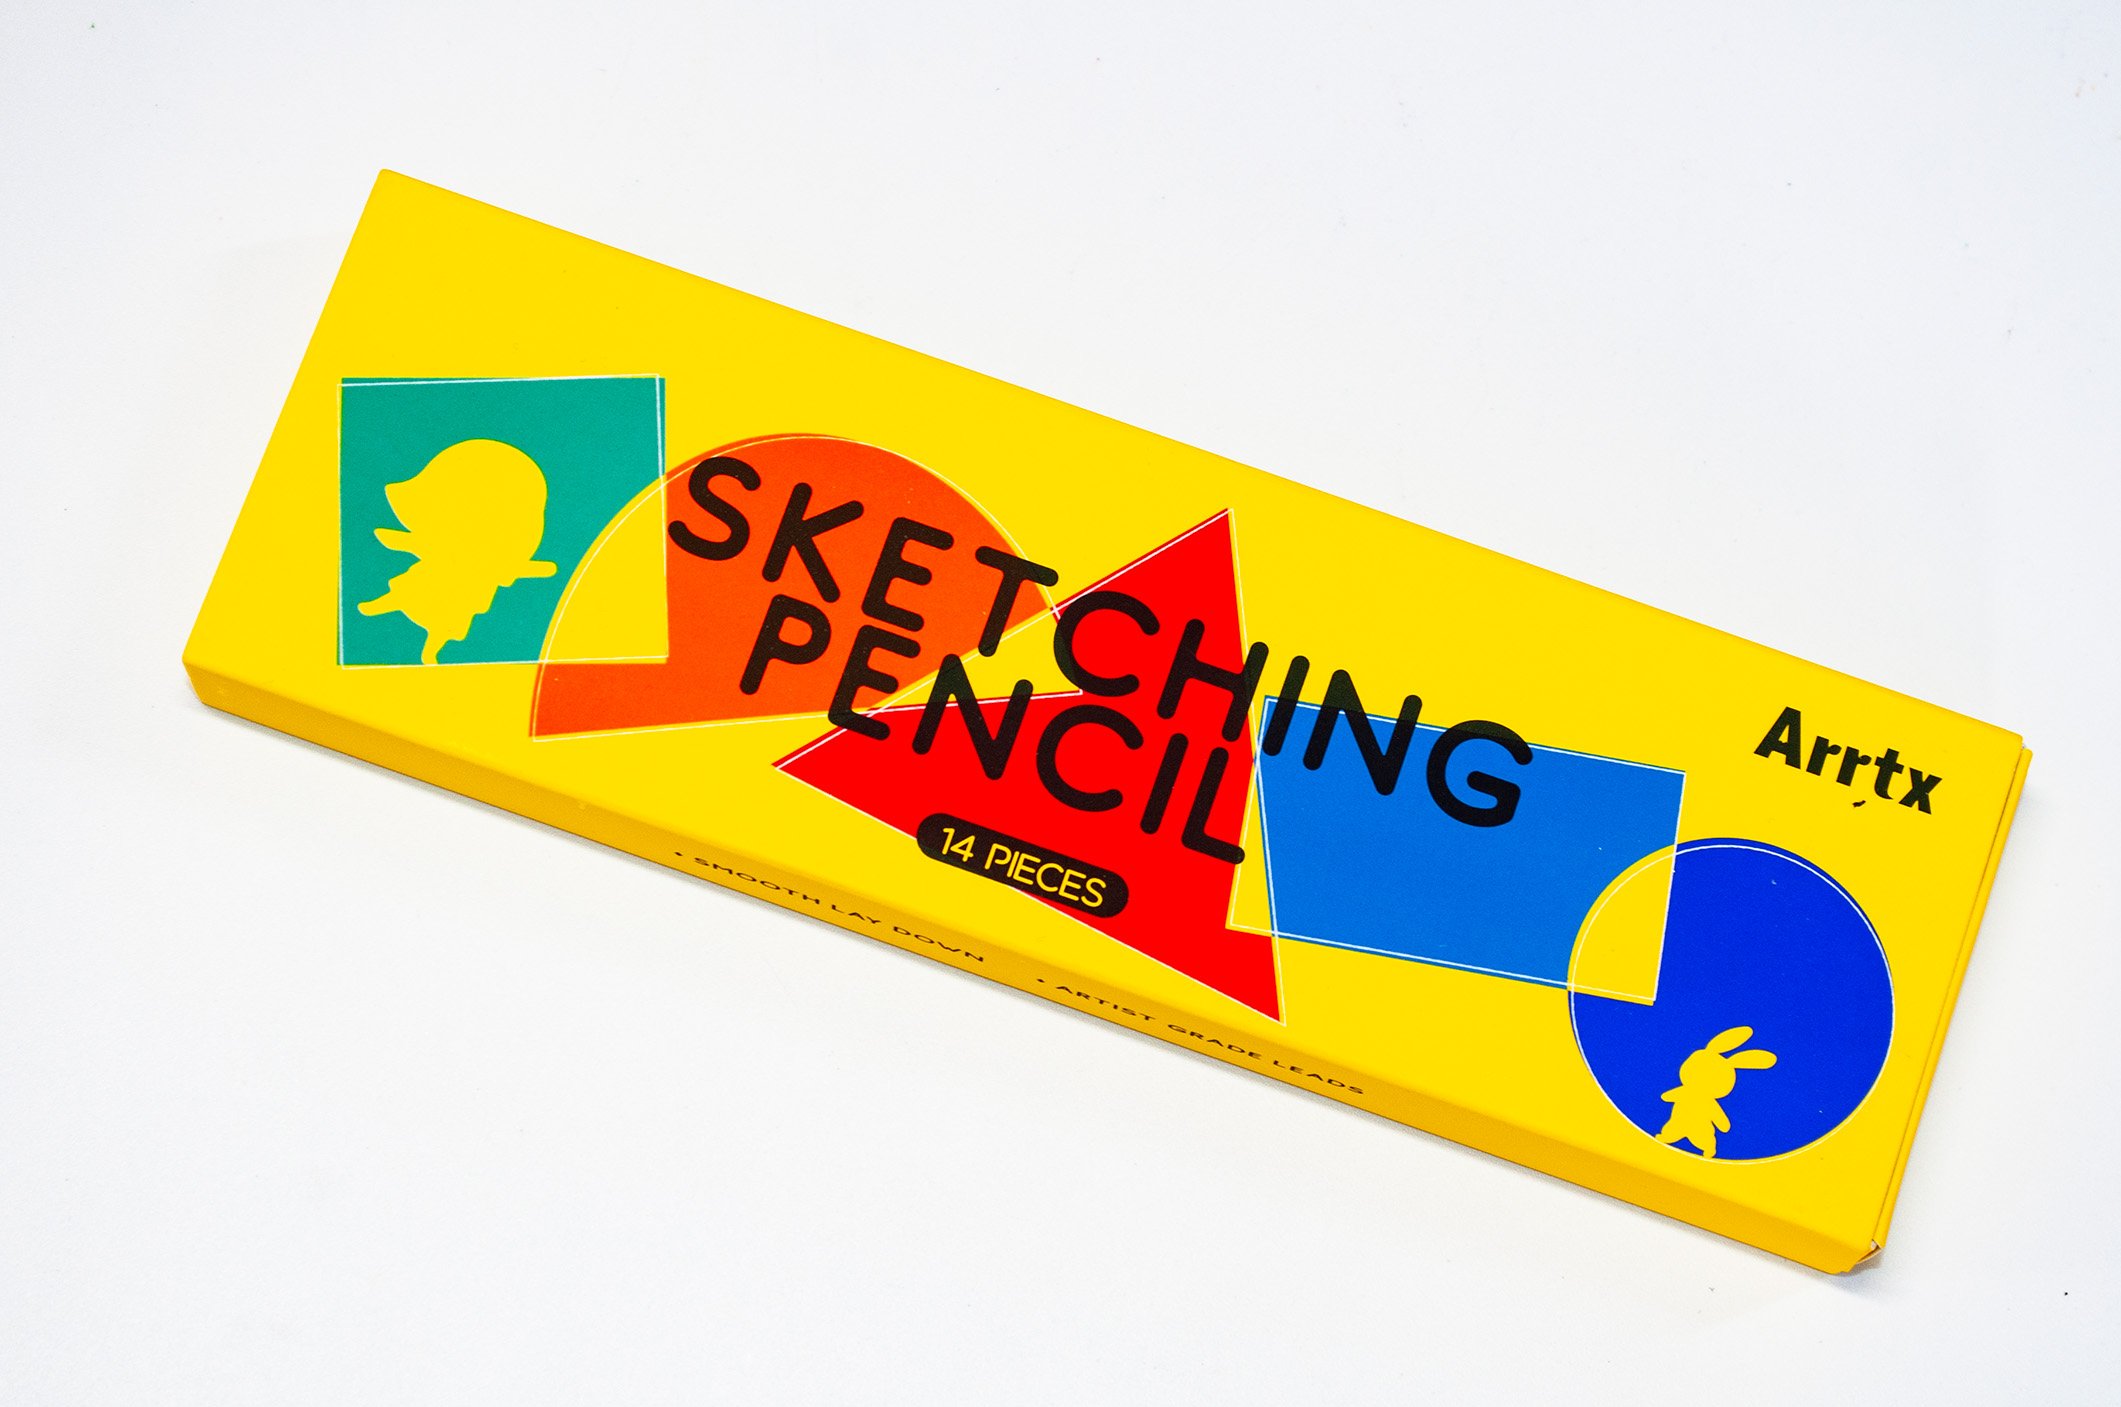 Arrtx Drawing Pencils, 14 Pcs (4H - 8B) Artist Sketching Pencils